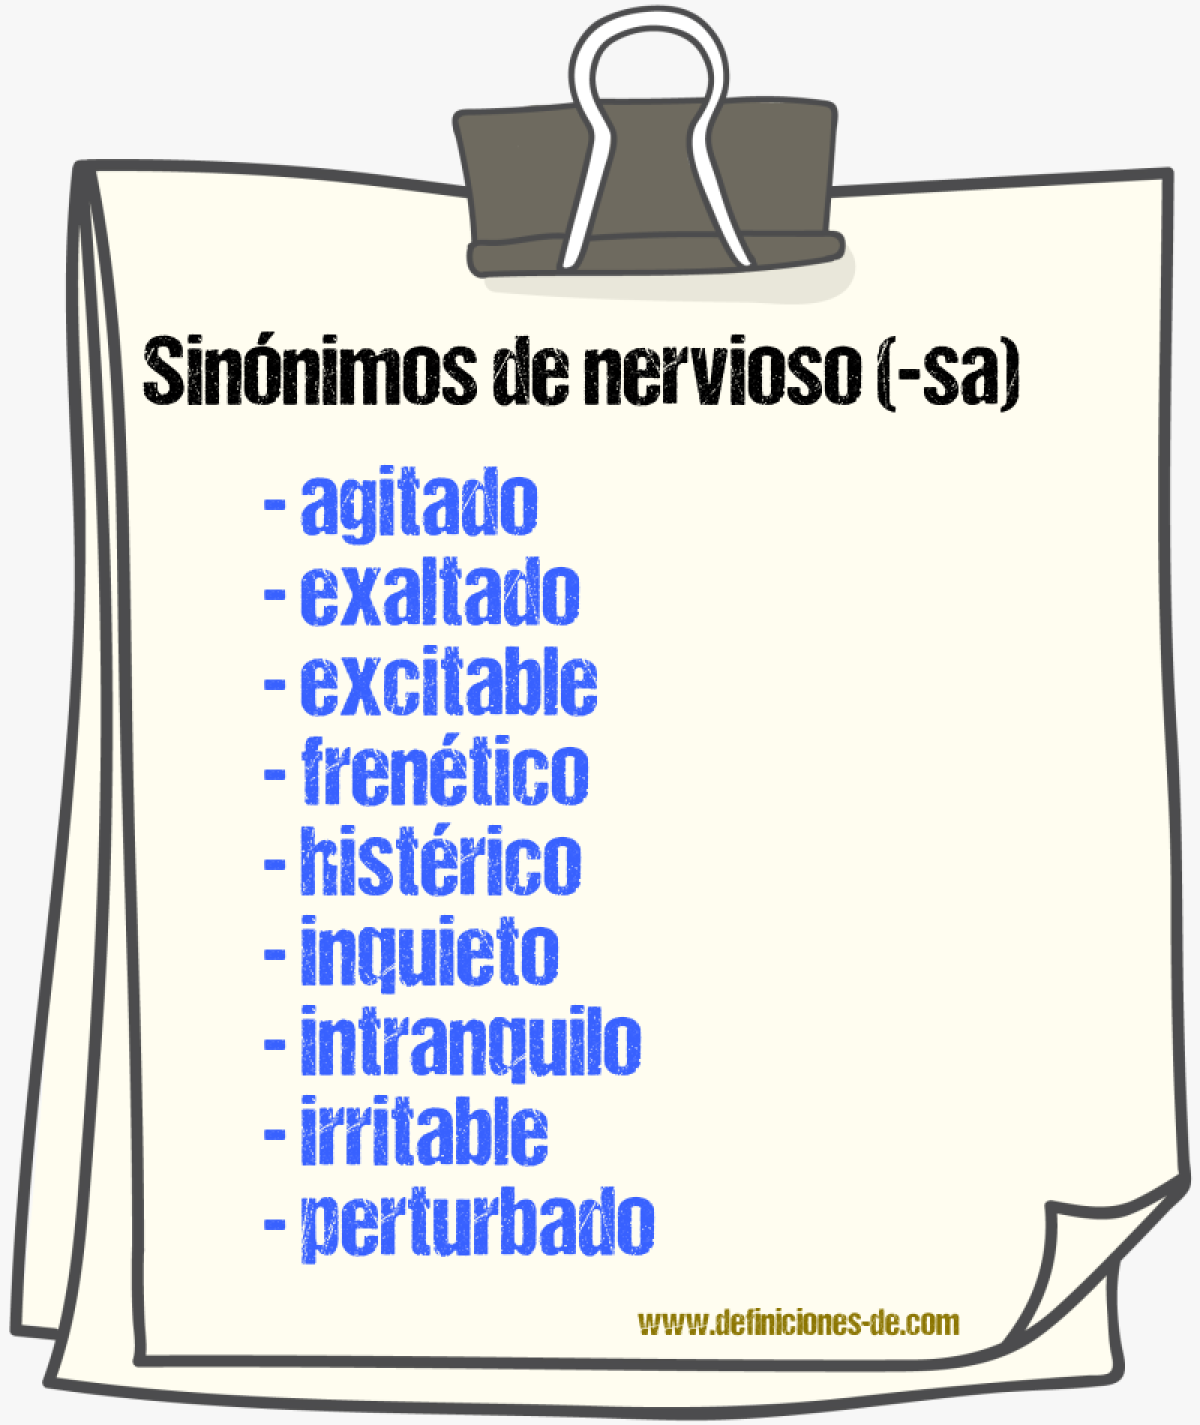 Sinónimos de nervioso